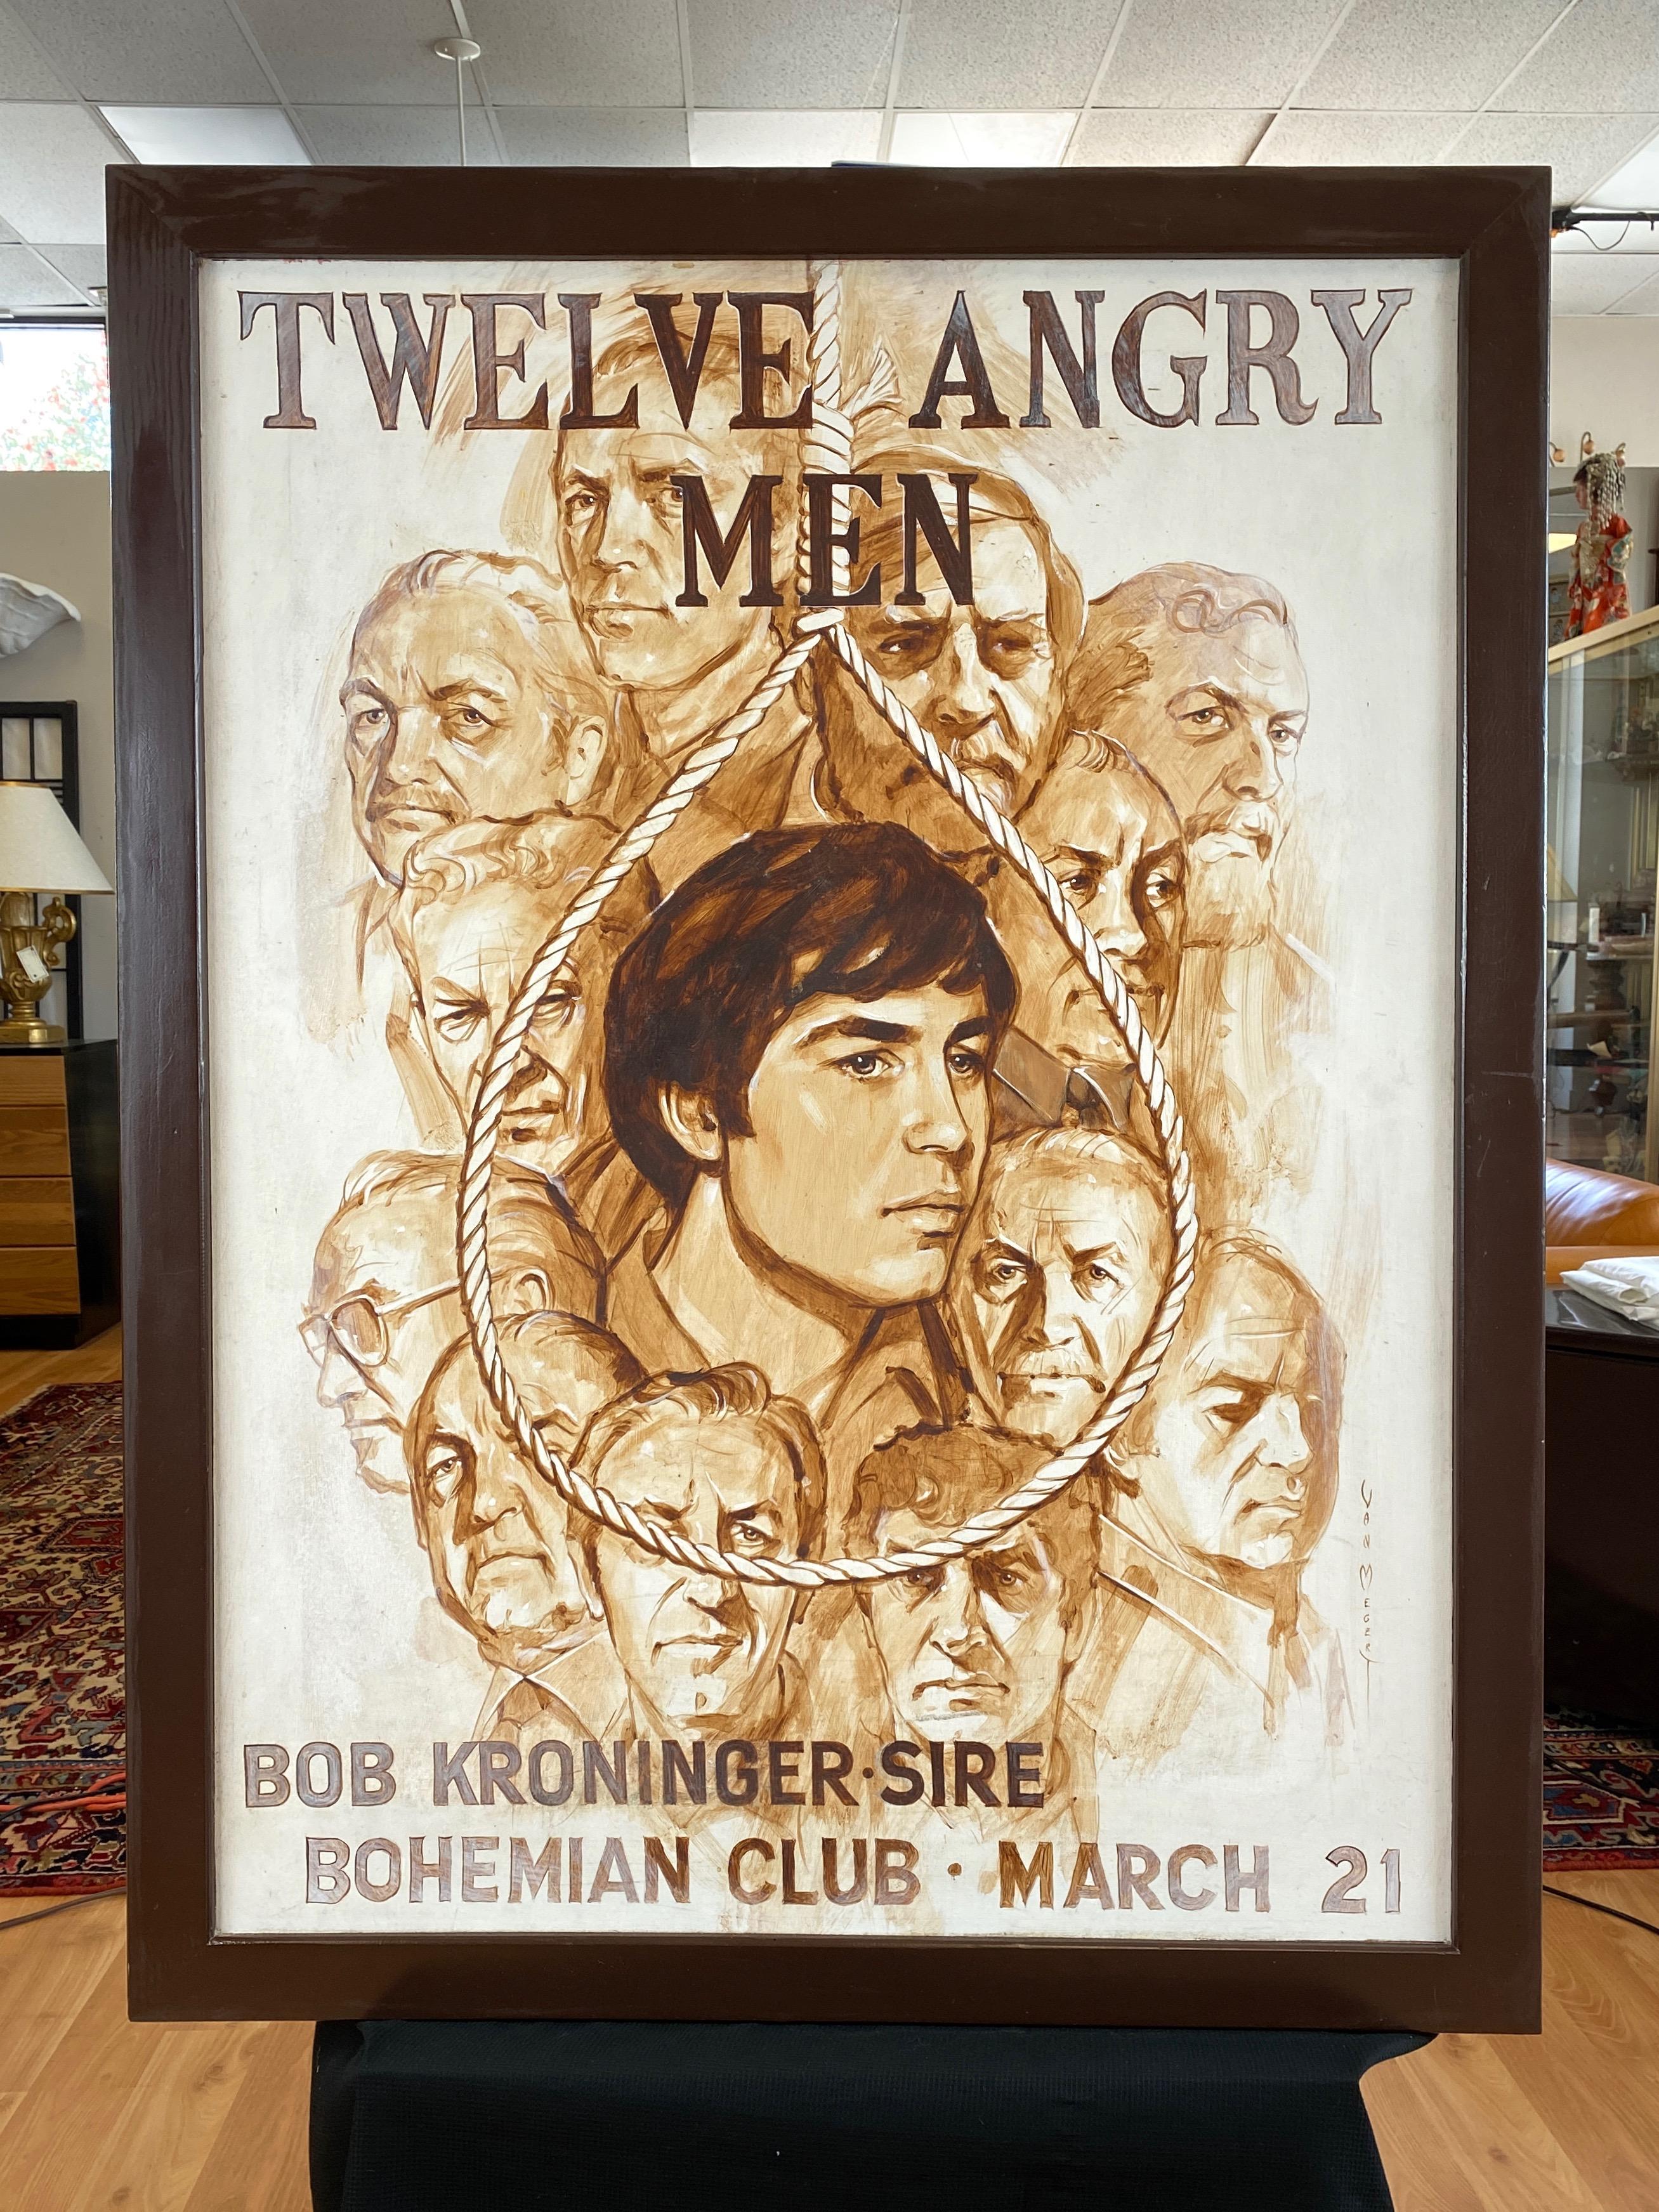 North American Large Bohemian Club “Twelve Angry Men” Promo Painting by Van Megert, c. 1960